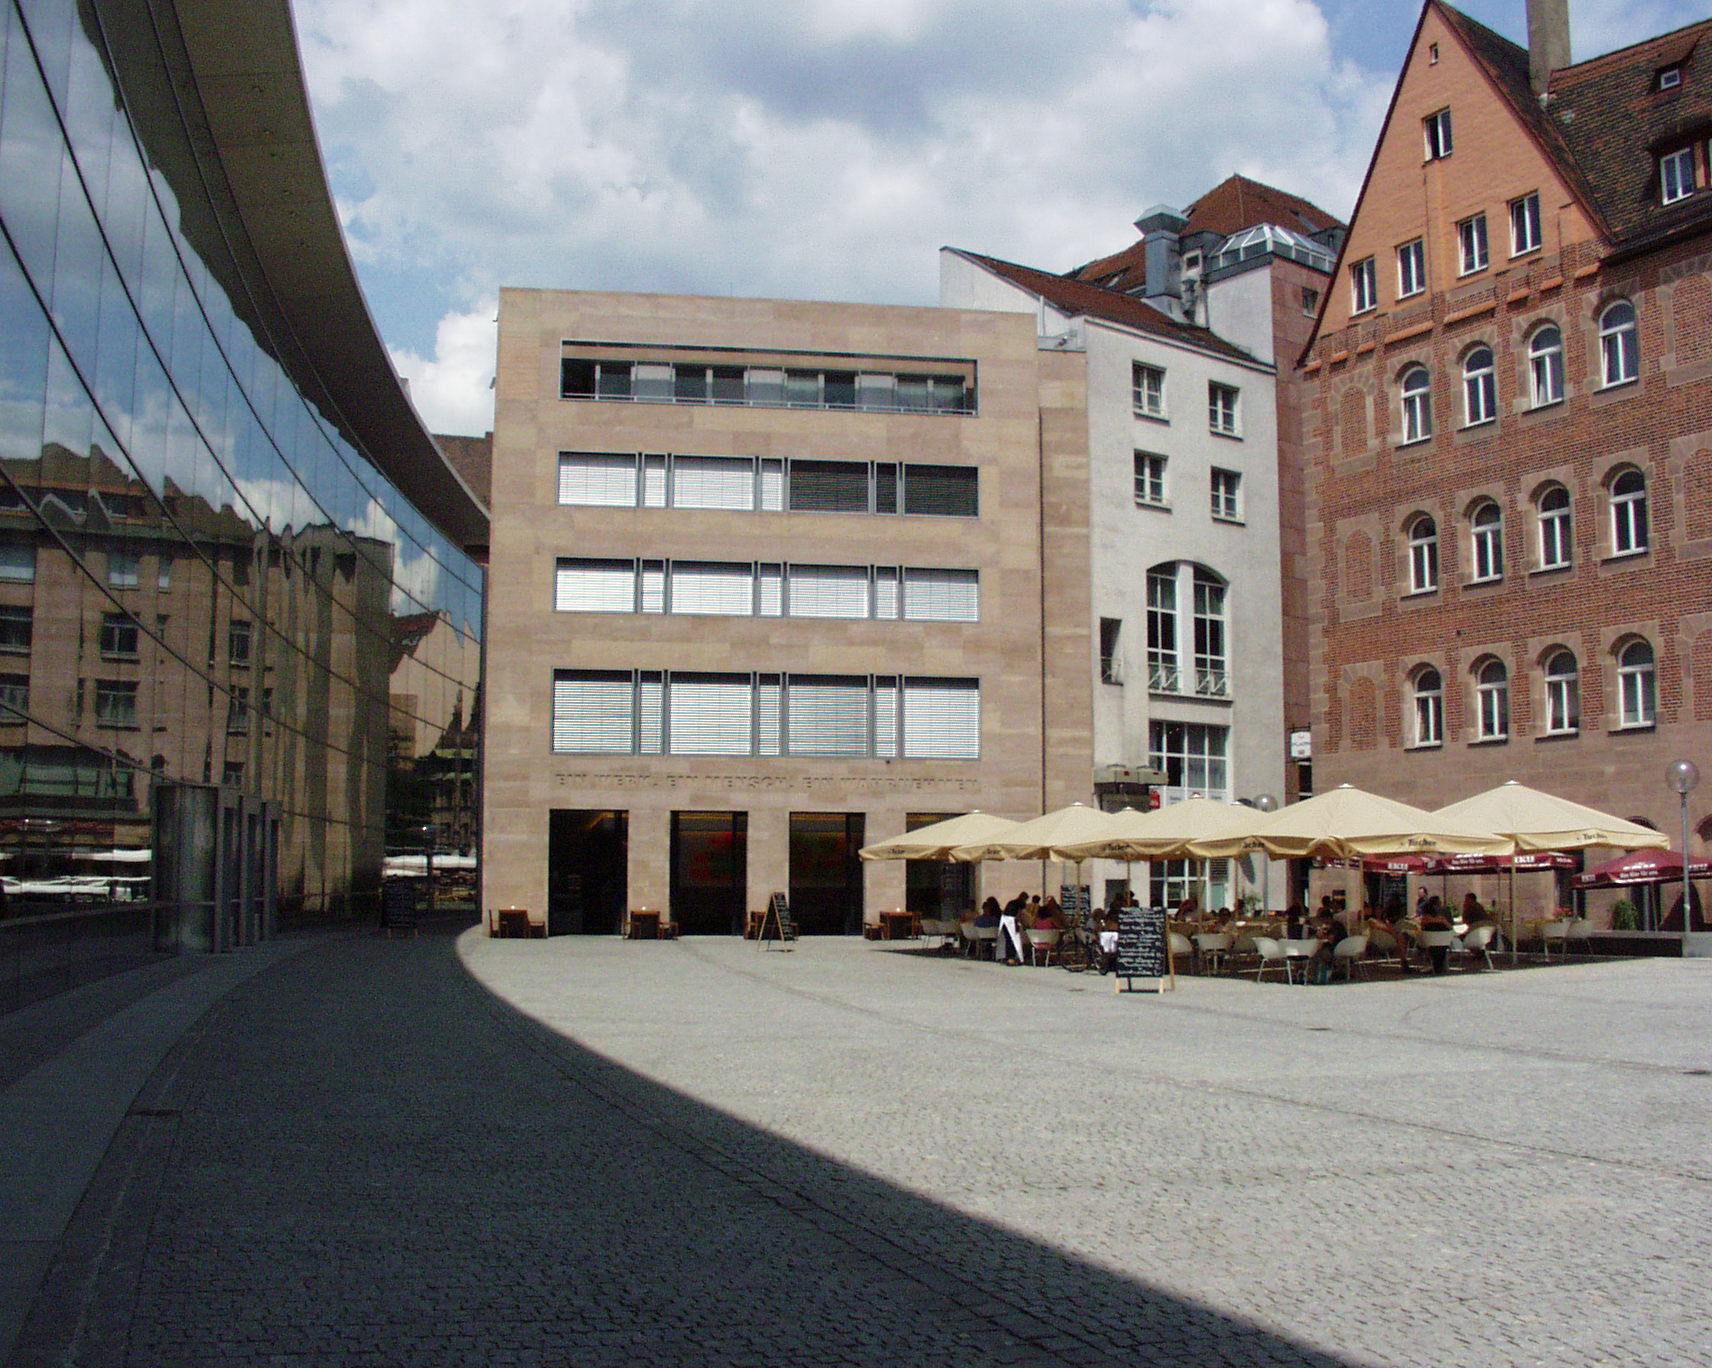 Außenansicht Neues Museum Nürnberg bei Tag: Klarissenplatz mit Backsteingebäude, links Glasfront des Museums, rechts weitere Gebäude und Sonnenschirme